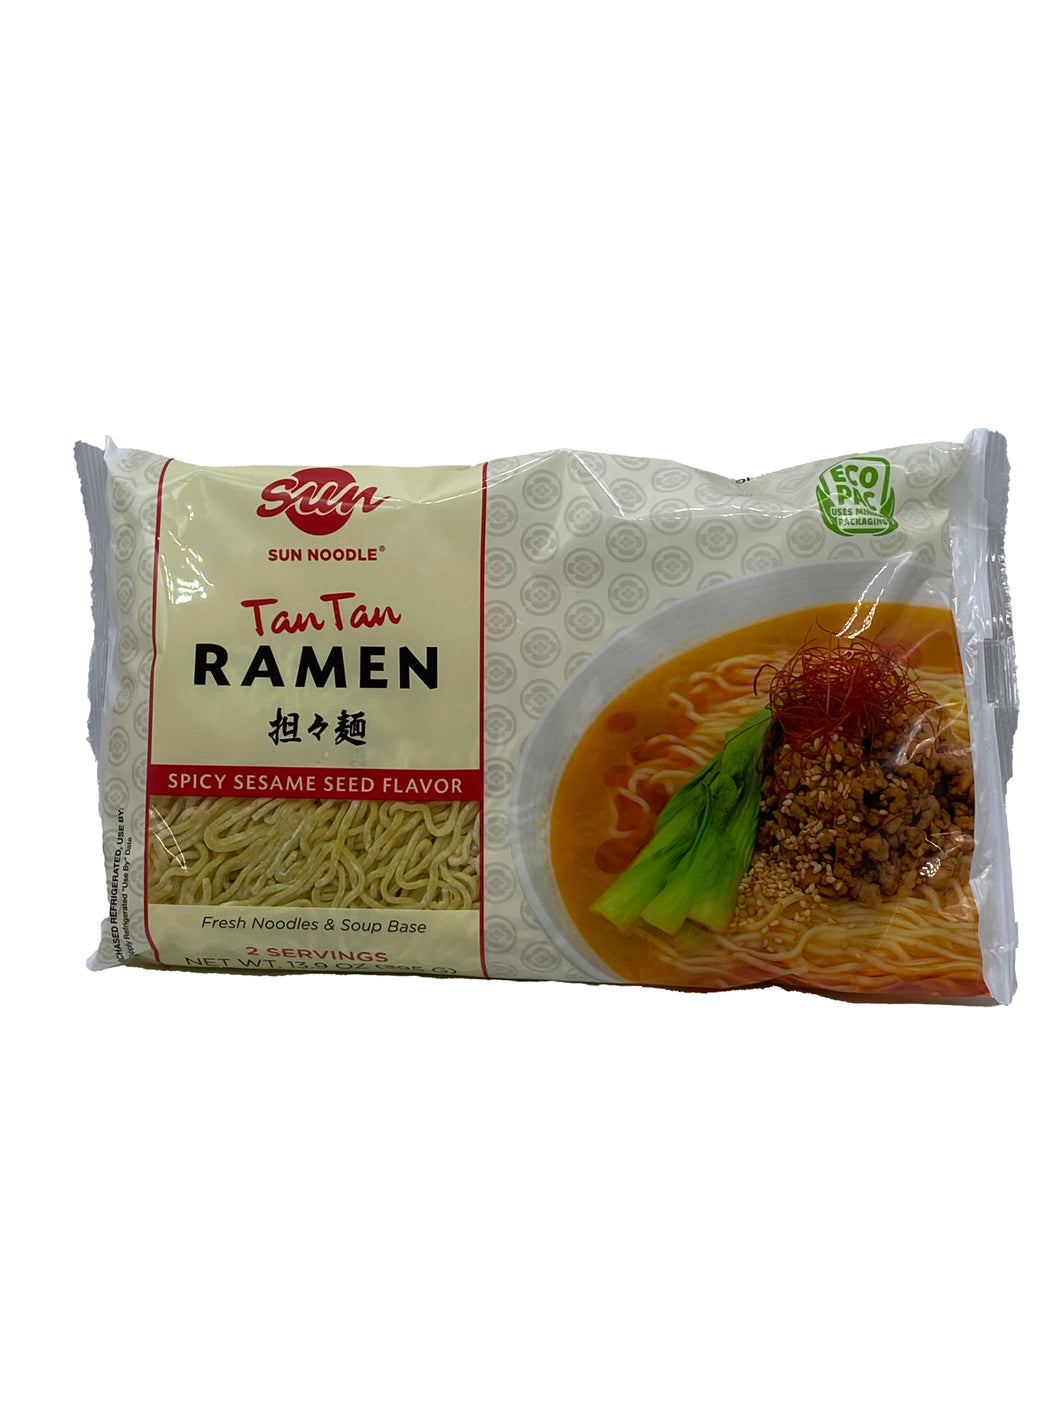 Sun Noodle Tan Tan Ramen